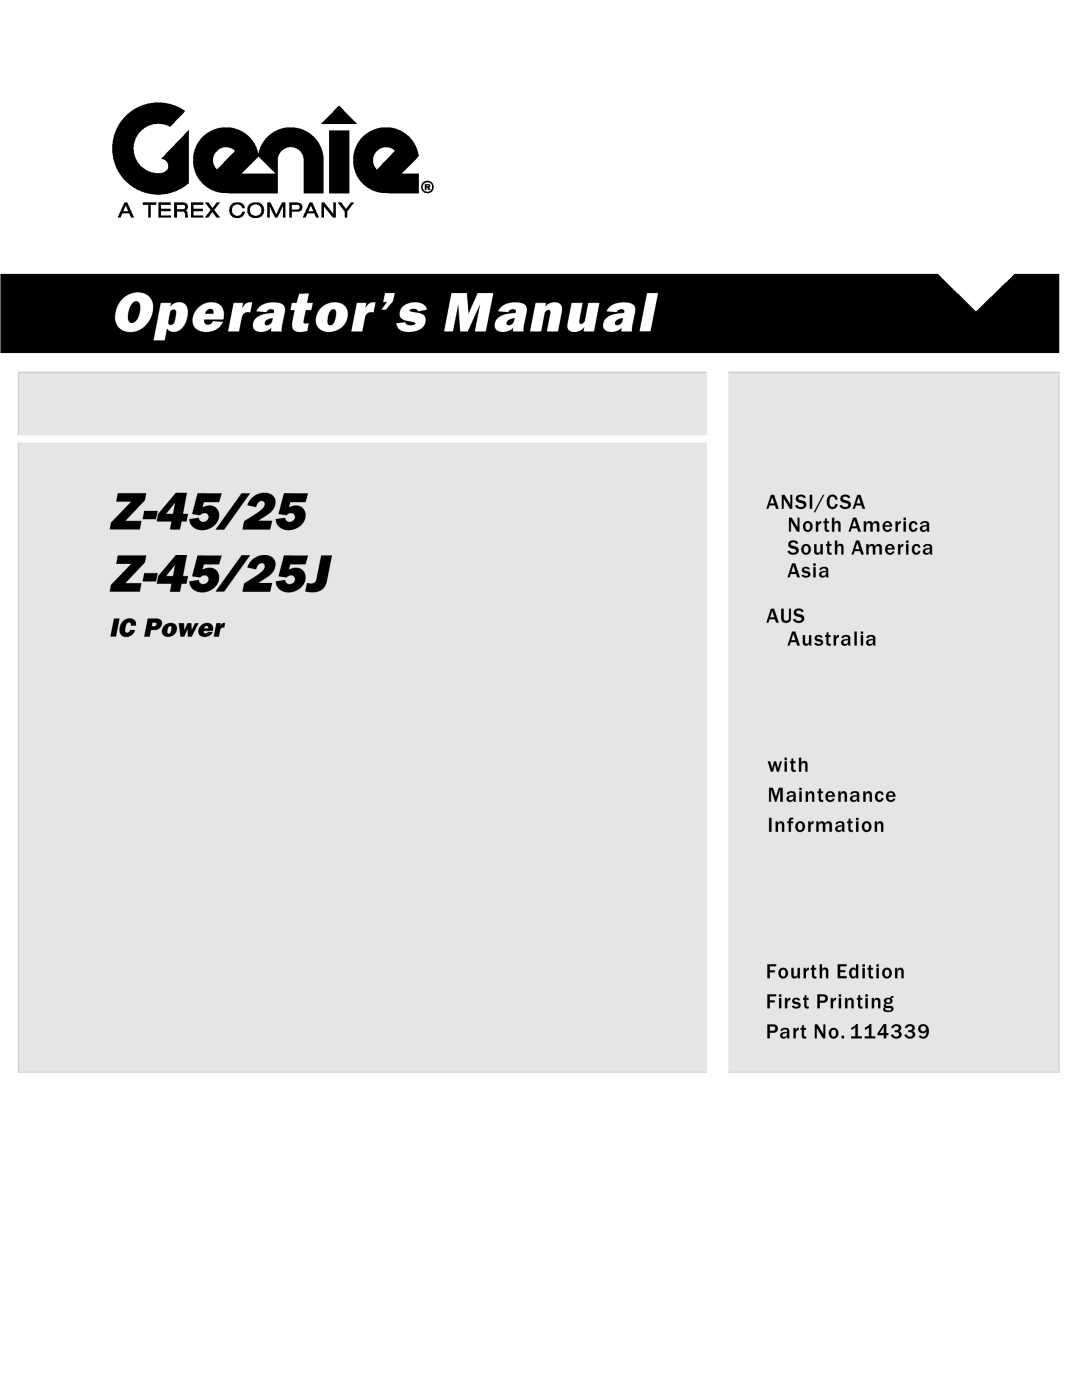 Genie Z-45, Z-25J manual Operator’s Manual, Z-4525 Z-4525J, IC Power, ANSI/CSA North America South America Asia AUS 